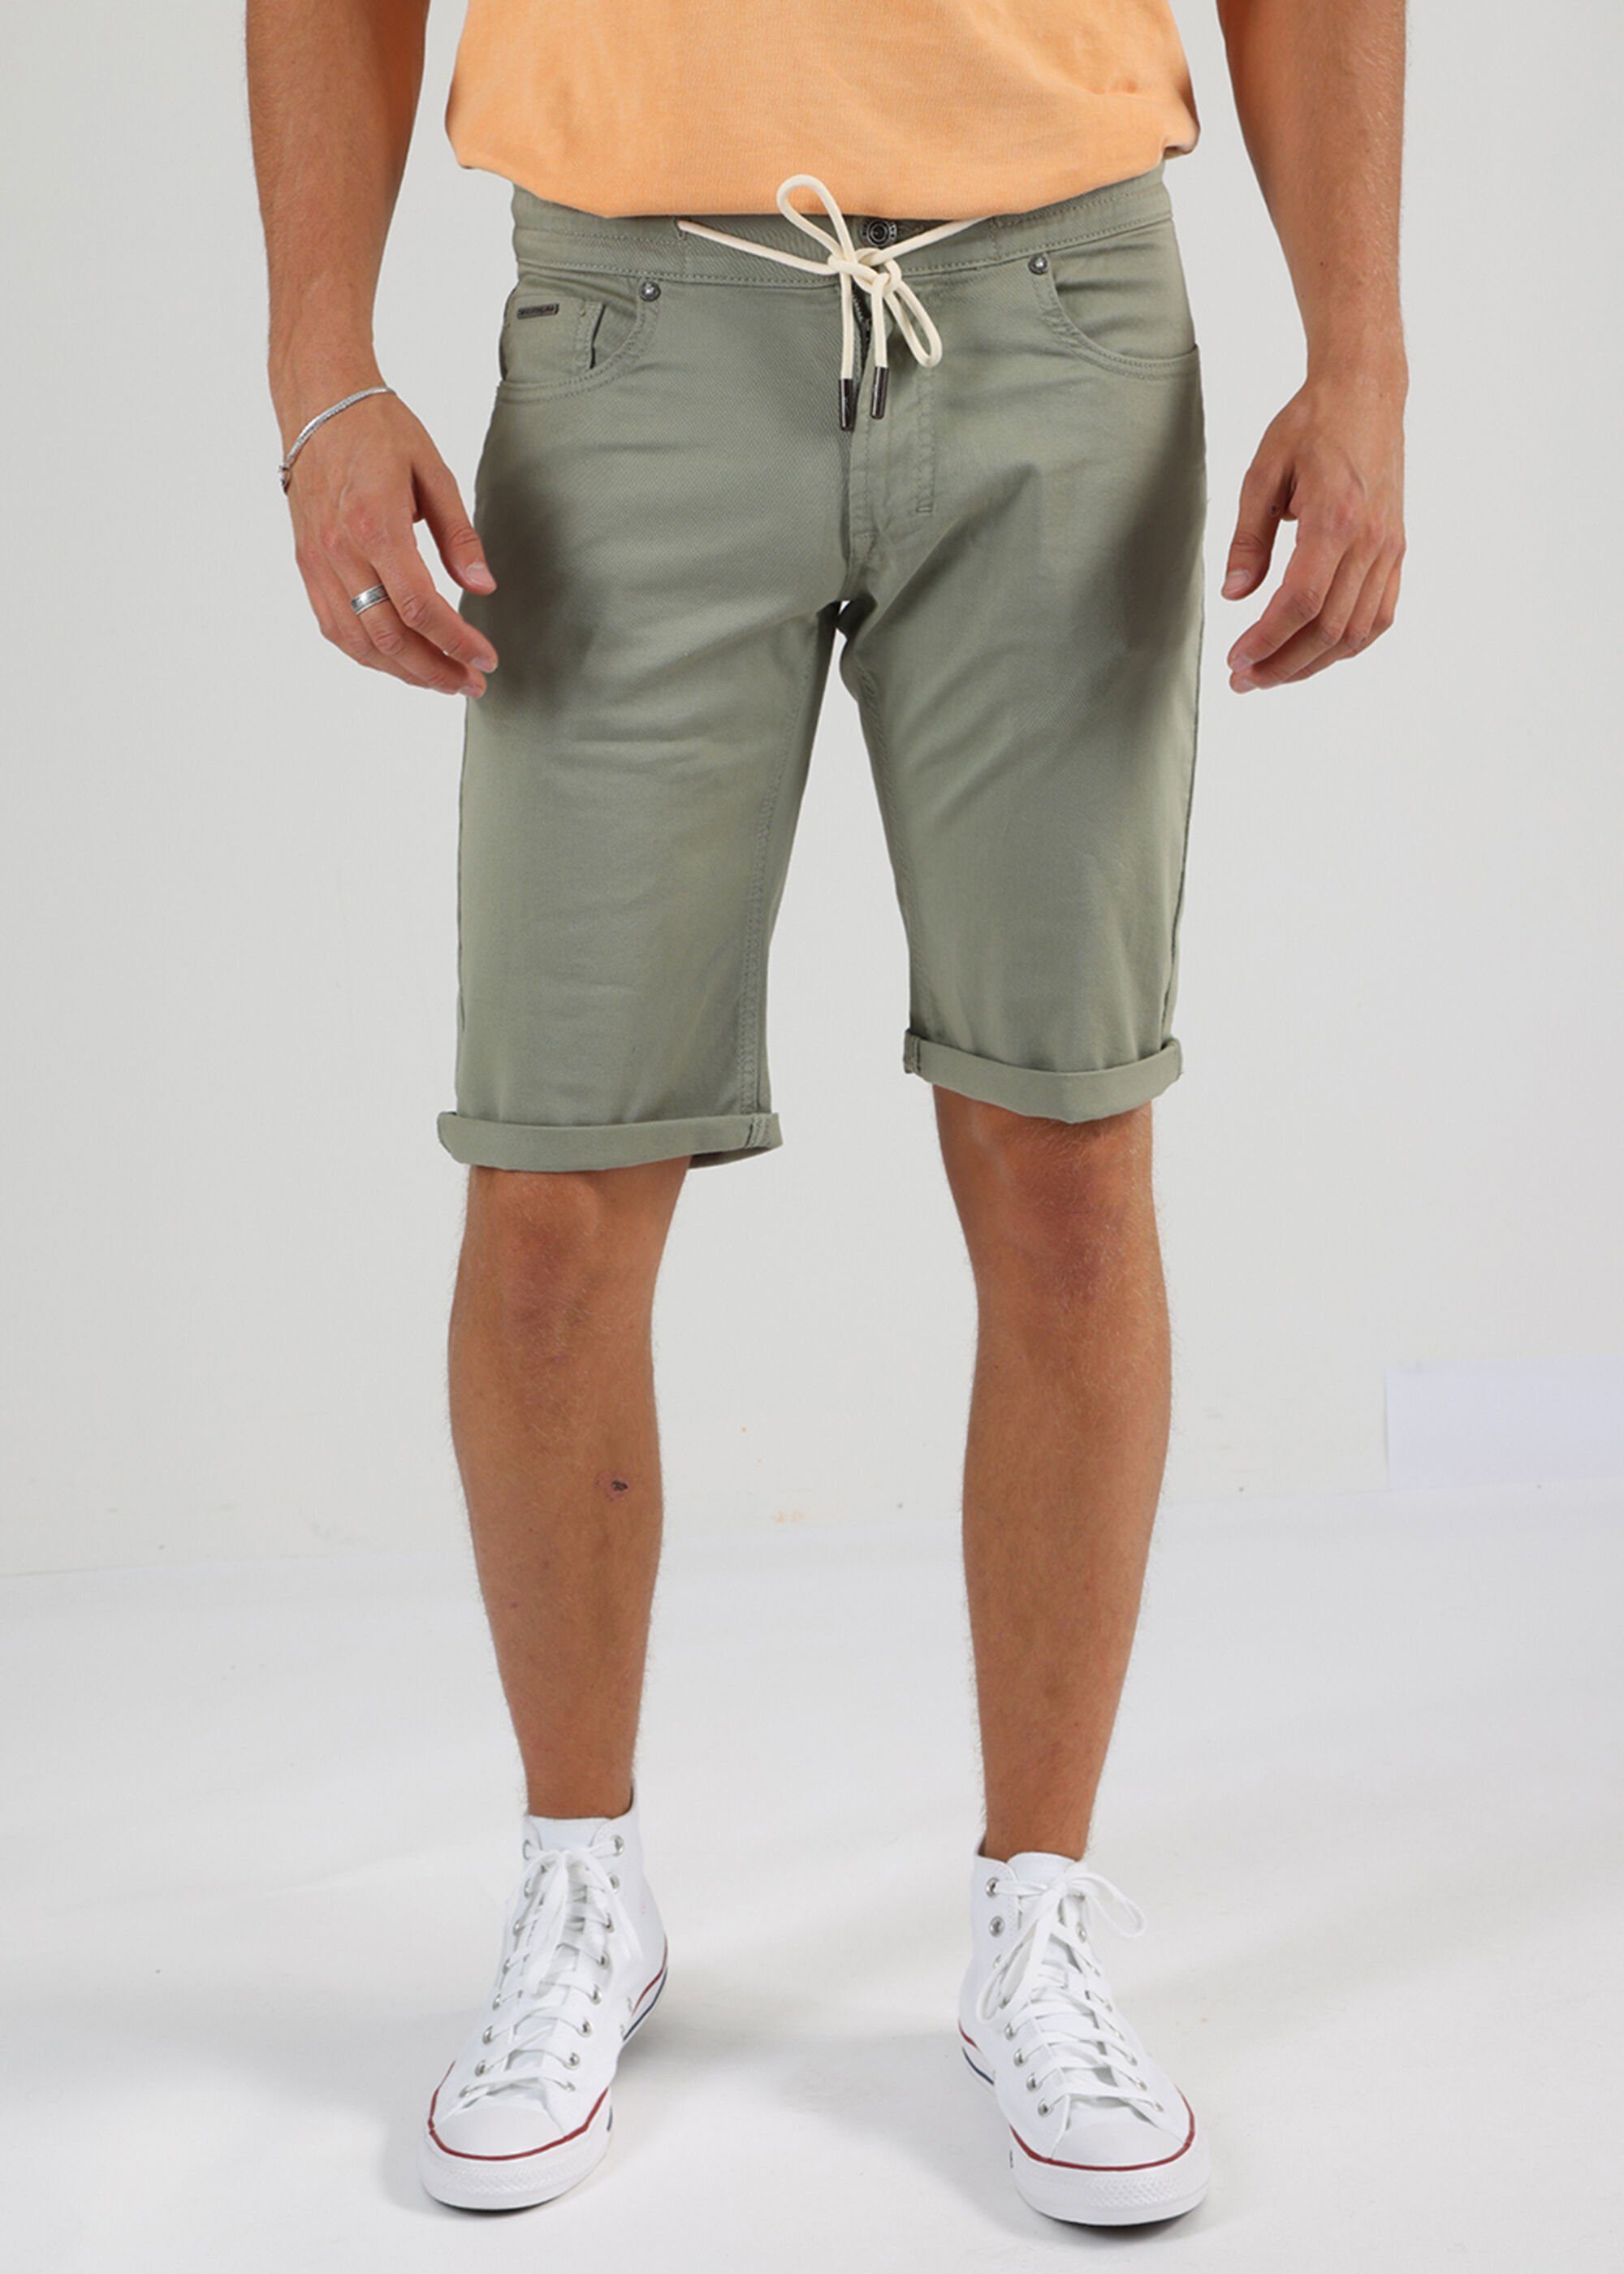 5 Pocket im of Denim Olive Shorts Style Miracle Thomas Shorts